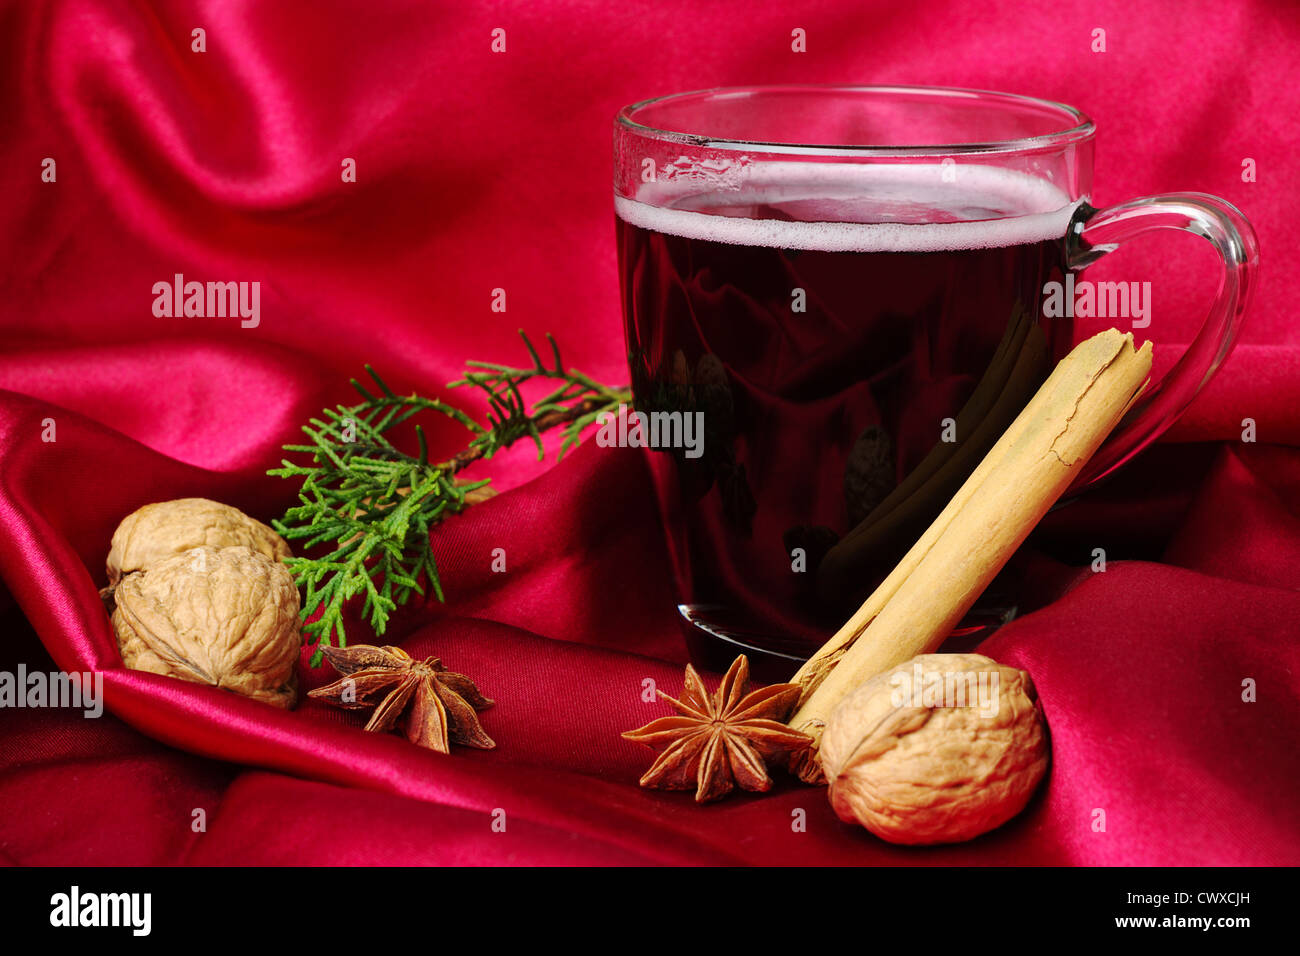 Vin rouge épicé chaud avec de la cannelle, de la badiane, noix et une branche d'evergreen sur fond rouge (Selective Focus) Banque D'Images